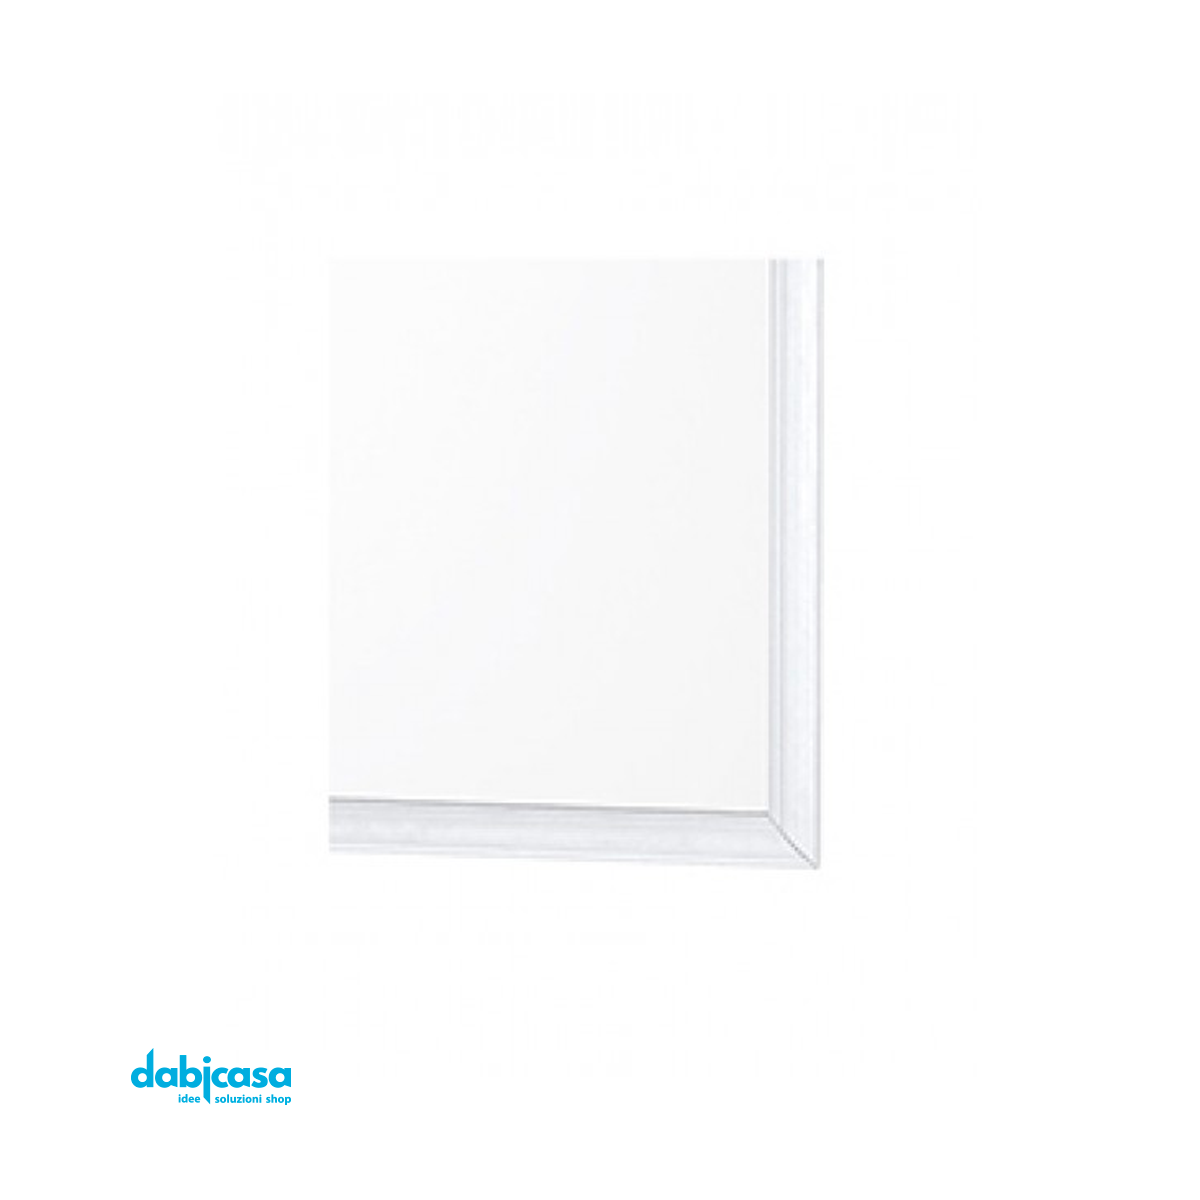 Specchio "Linea White" Con Cornice Colore Bianco in ABS 40x50cm freeshipping - Dabicasa